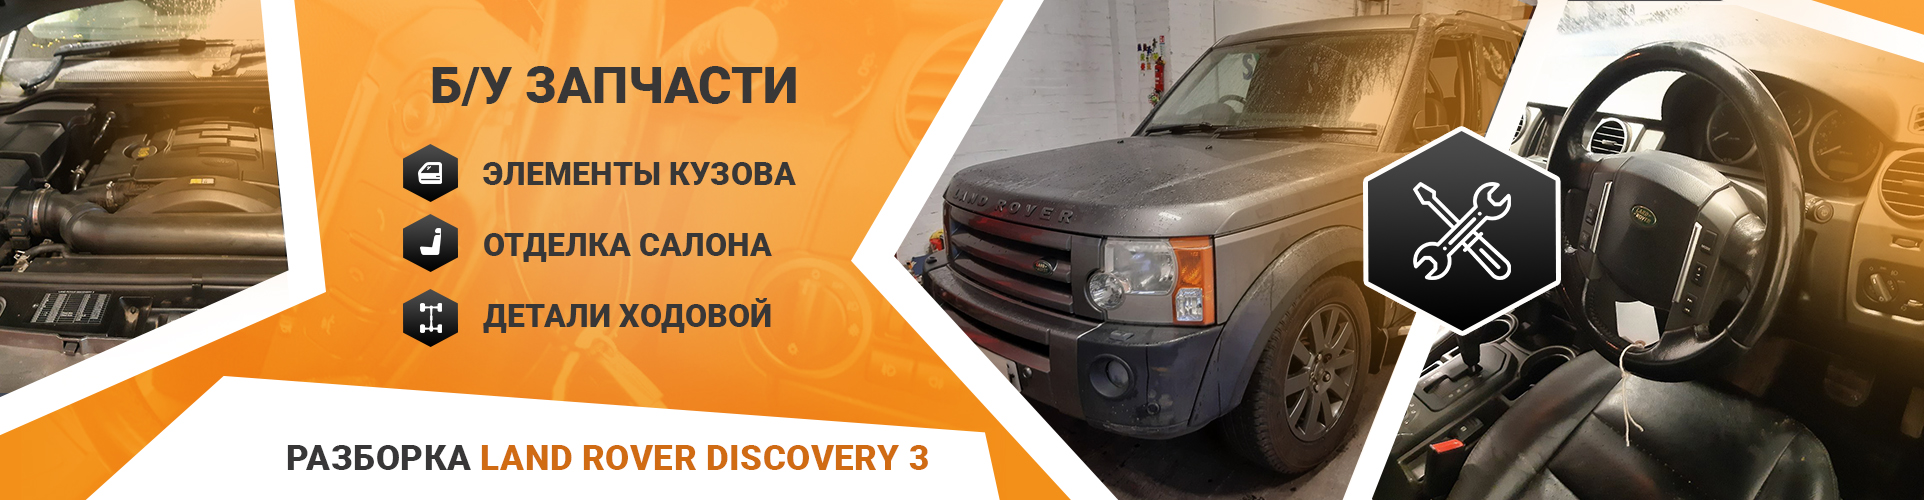 БУ запчасти на Land Rover Discovery 3 с разборки LR-Parts.com.ua